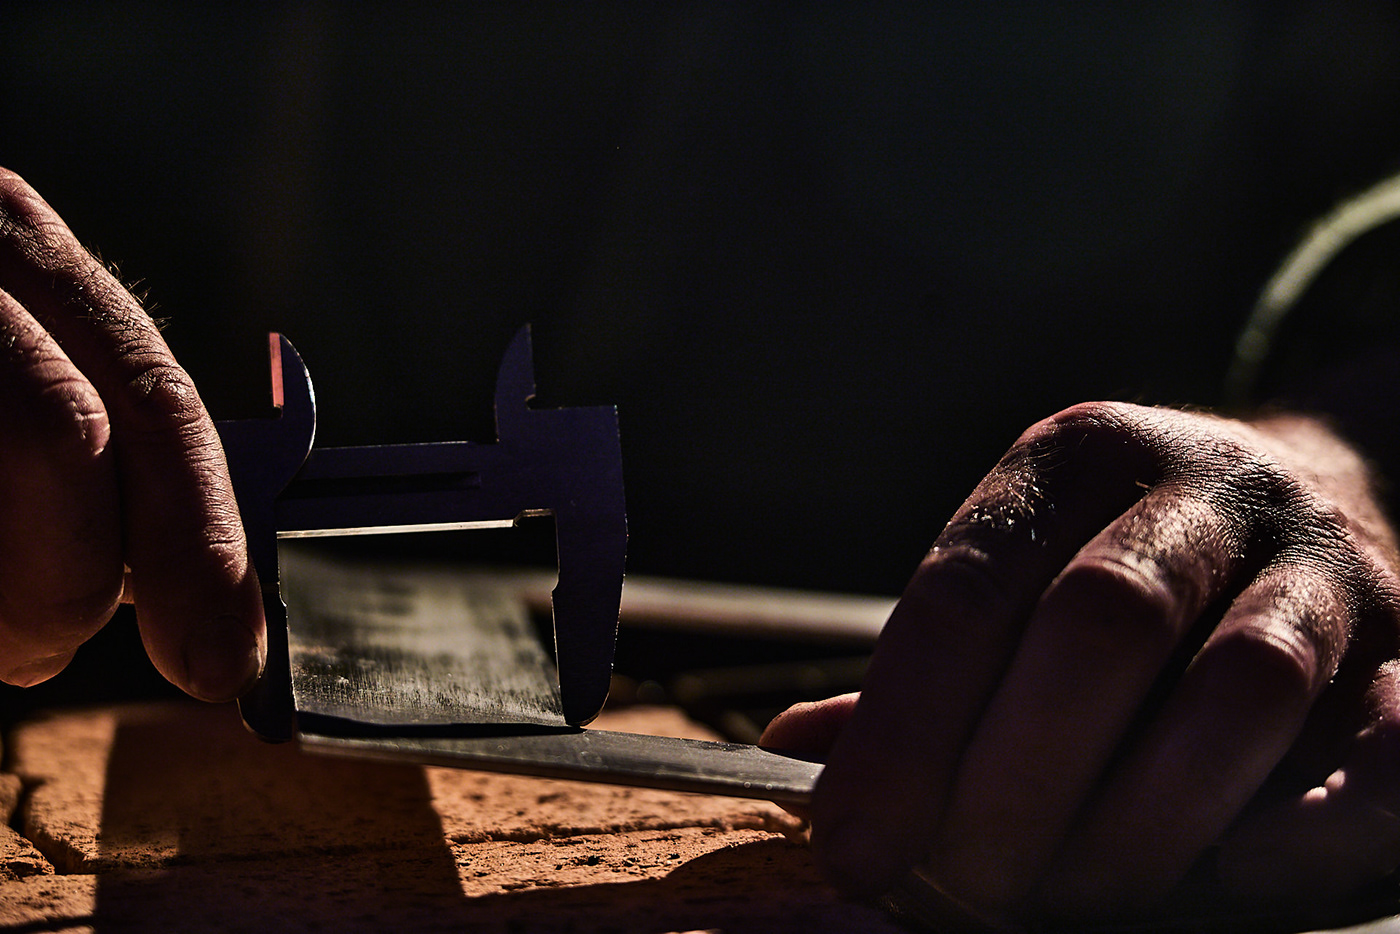 welding индустриальная фотосъёмка металл производство промышленная фотосъемка сварка сварщик